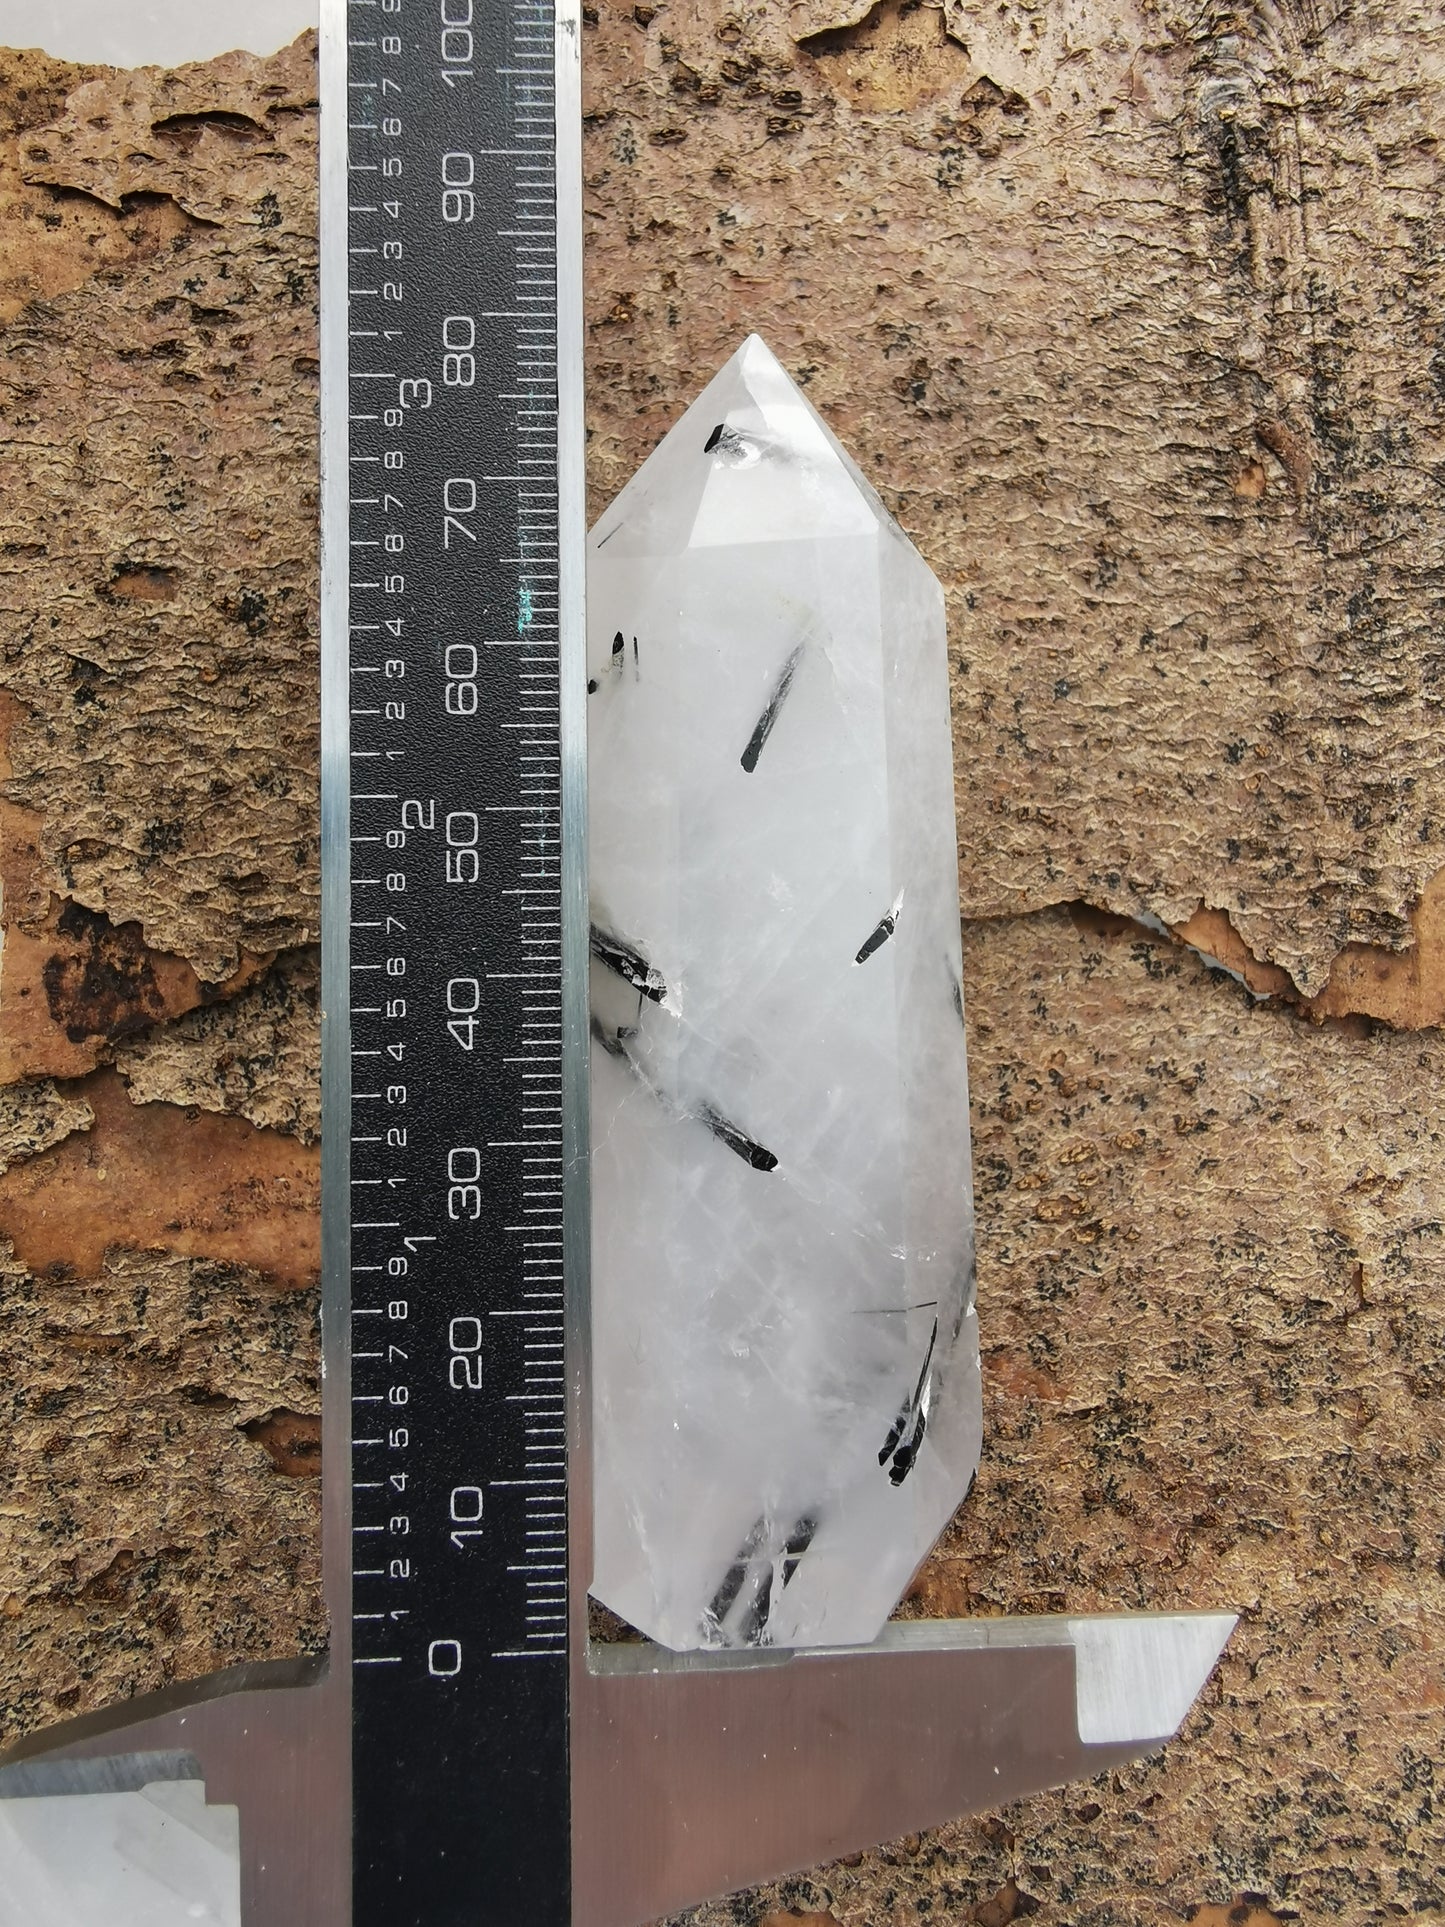 Tourmaline quartz tip - 2nd grade